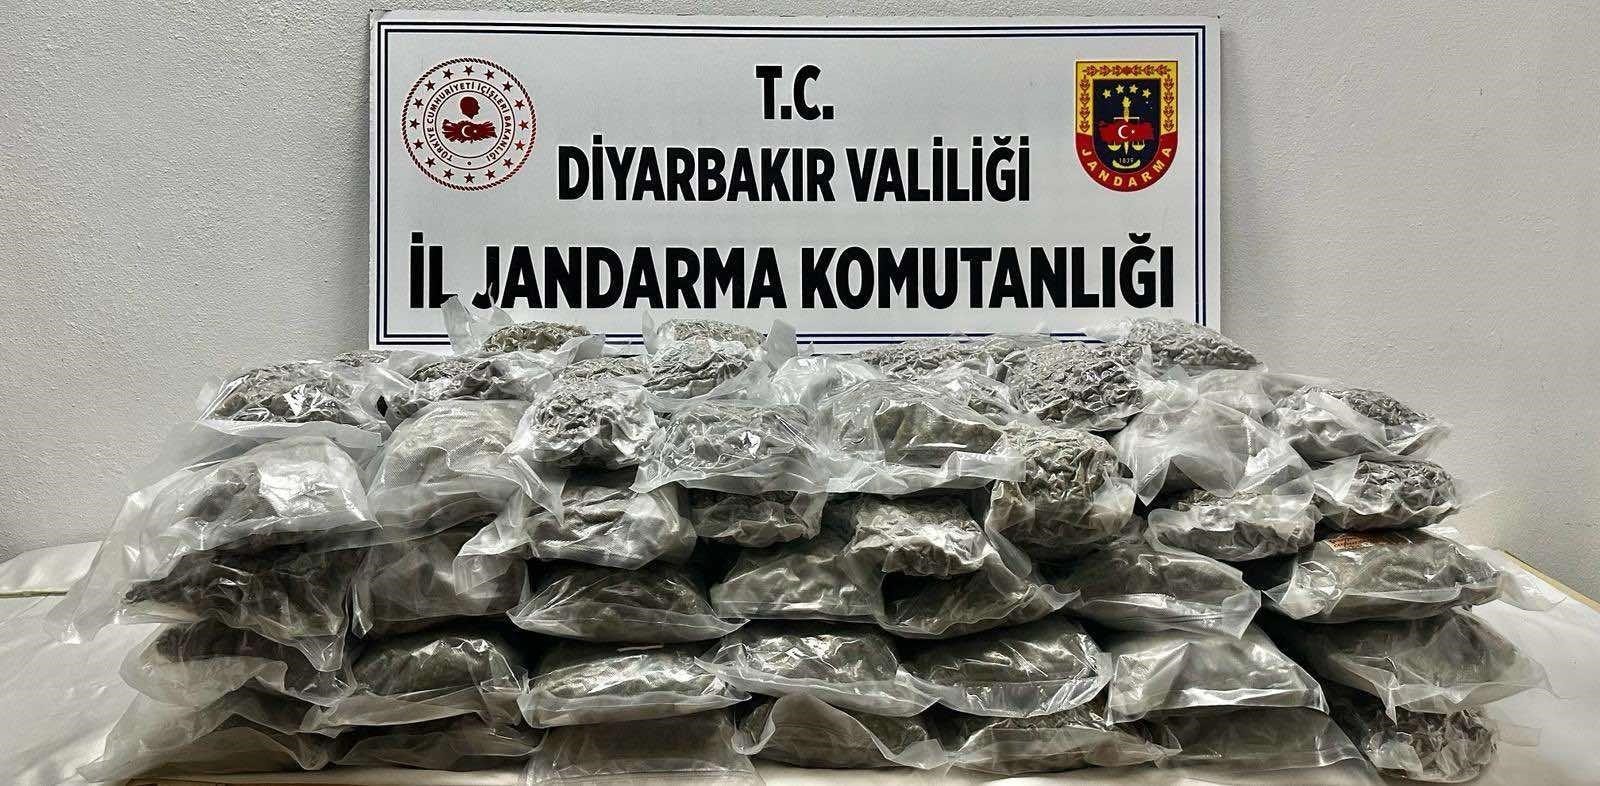 Diyarbakır’da aracın içinde 71 kilo esrar ele geçirildi